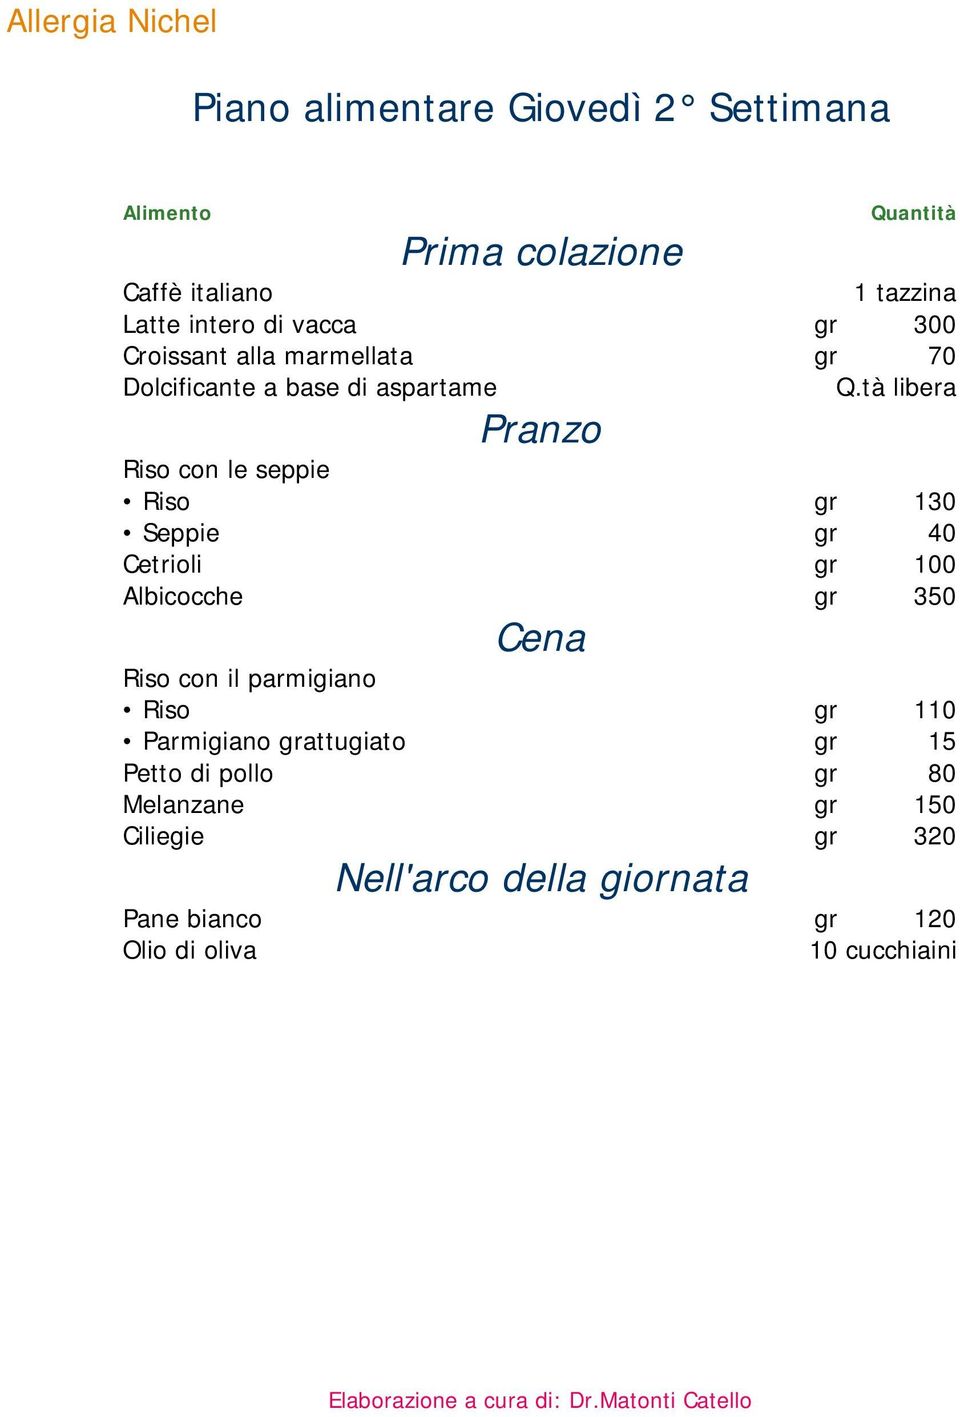 Albicocche gr 350 Riso con il parmigiano Riso gr 110 Parmigiano grattugiato gr 15